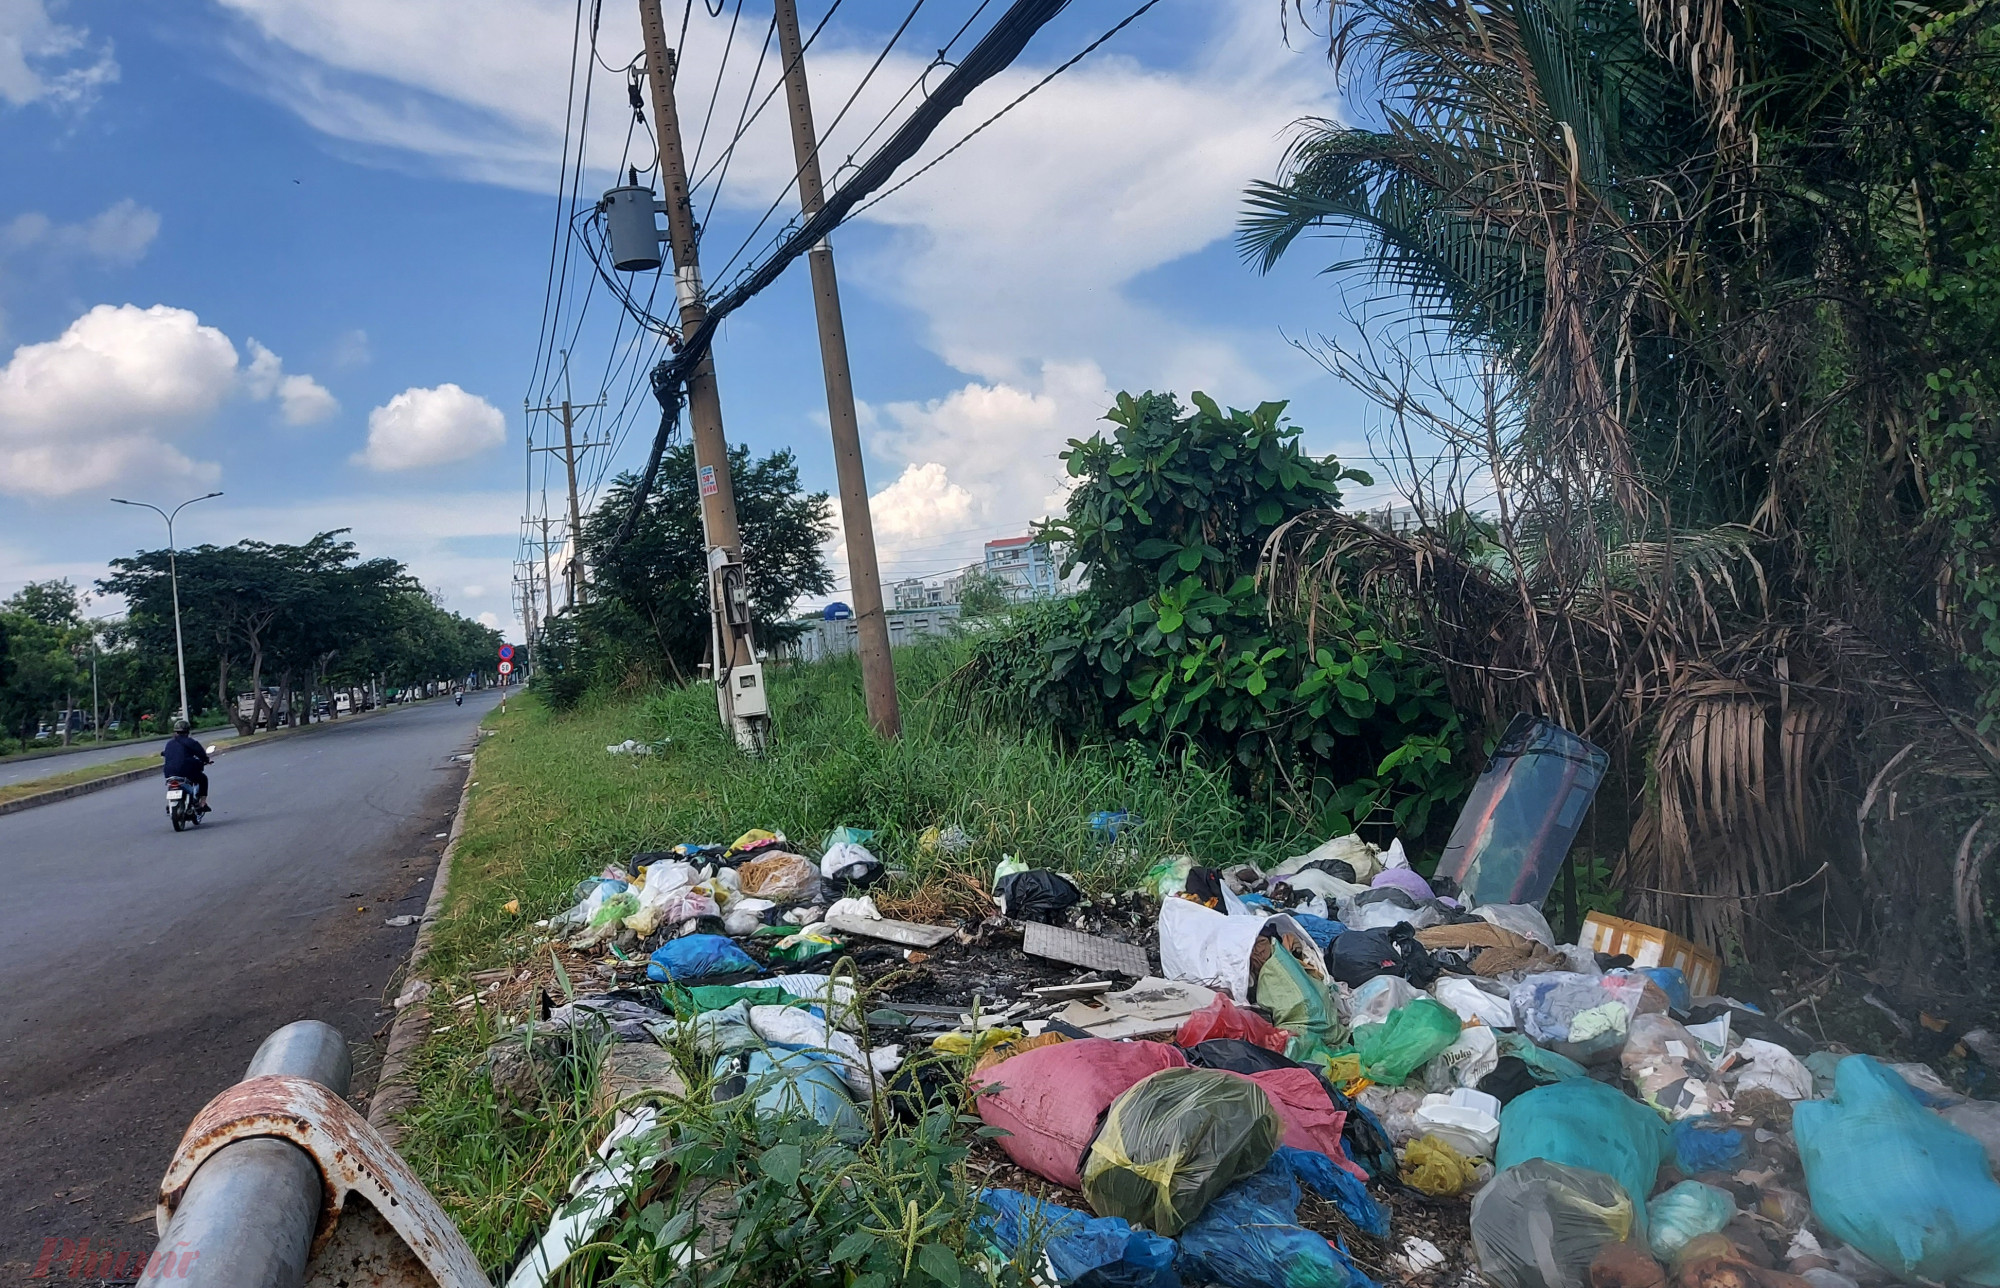 Trên đường Nguyễn Văn Linh (từ quận 7 về huyện Bình Chánh, TP.HCM), người đi đường có thể dễ dàng bắt gặp vài chục đống rác lớn nhỏ bốc mùi hôi nồng nặc.